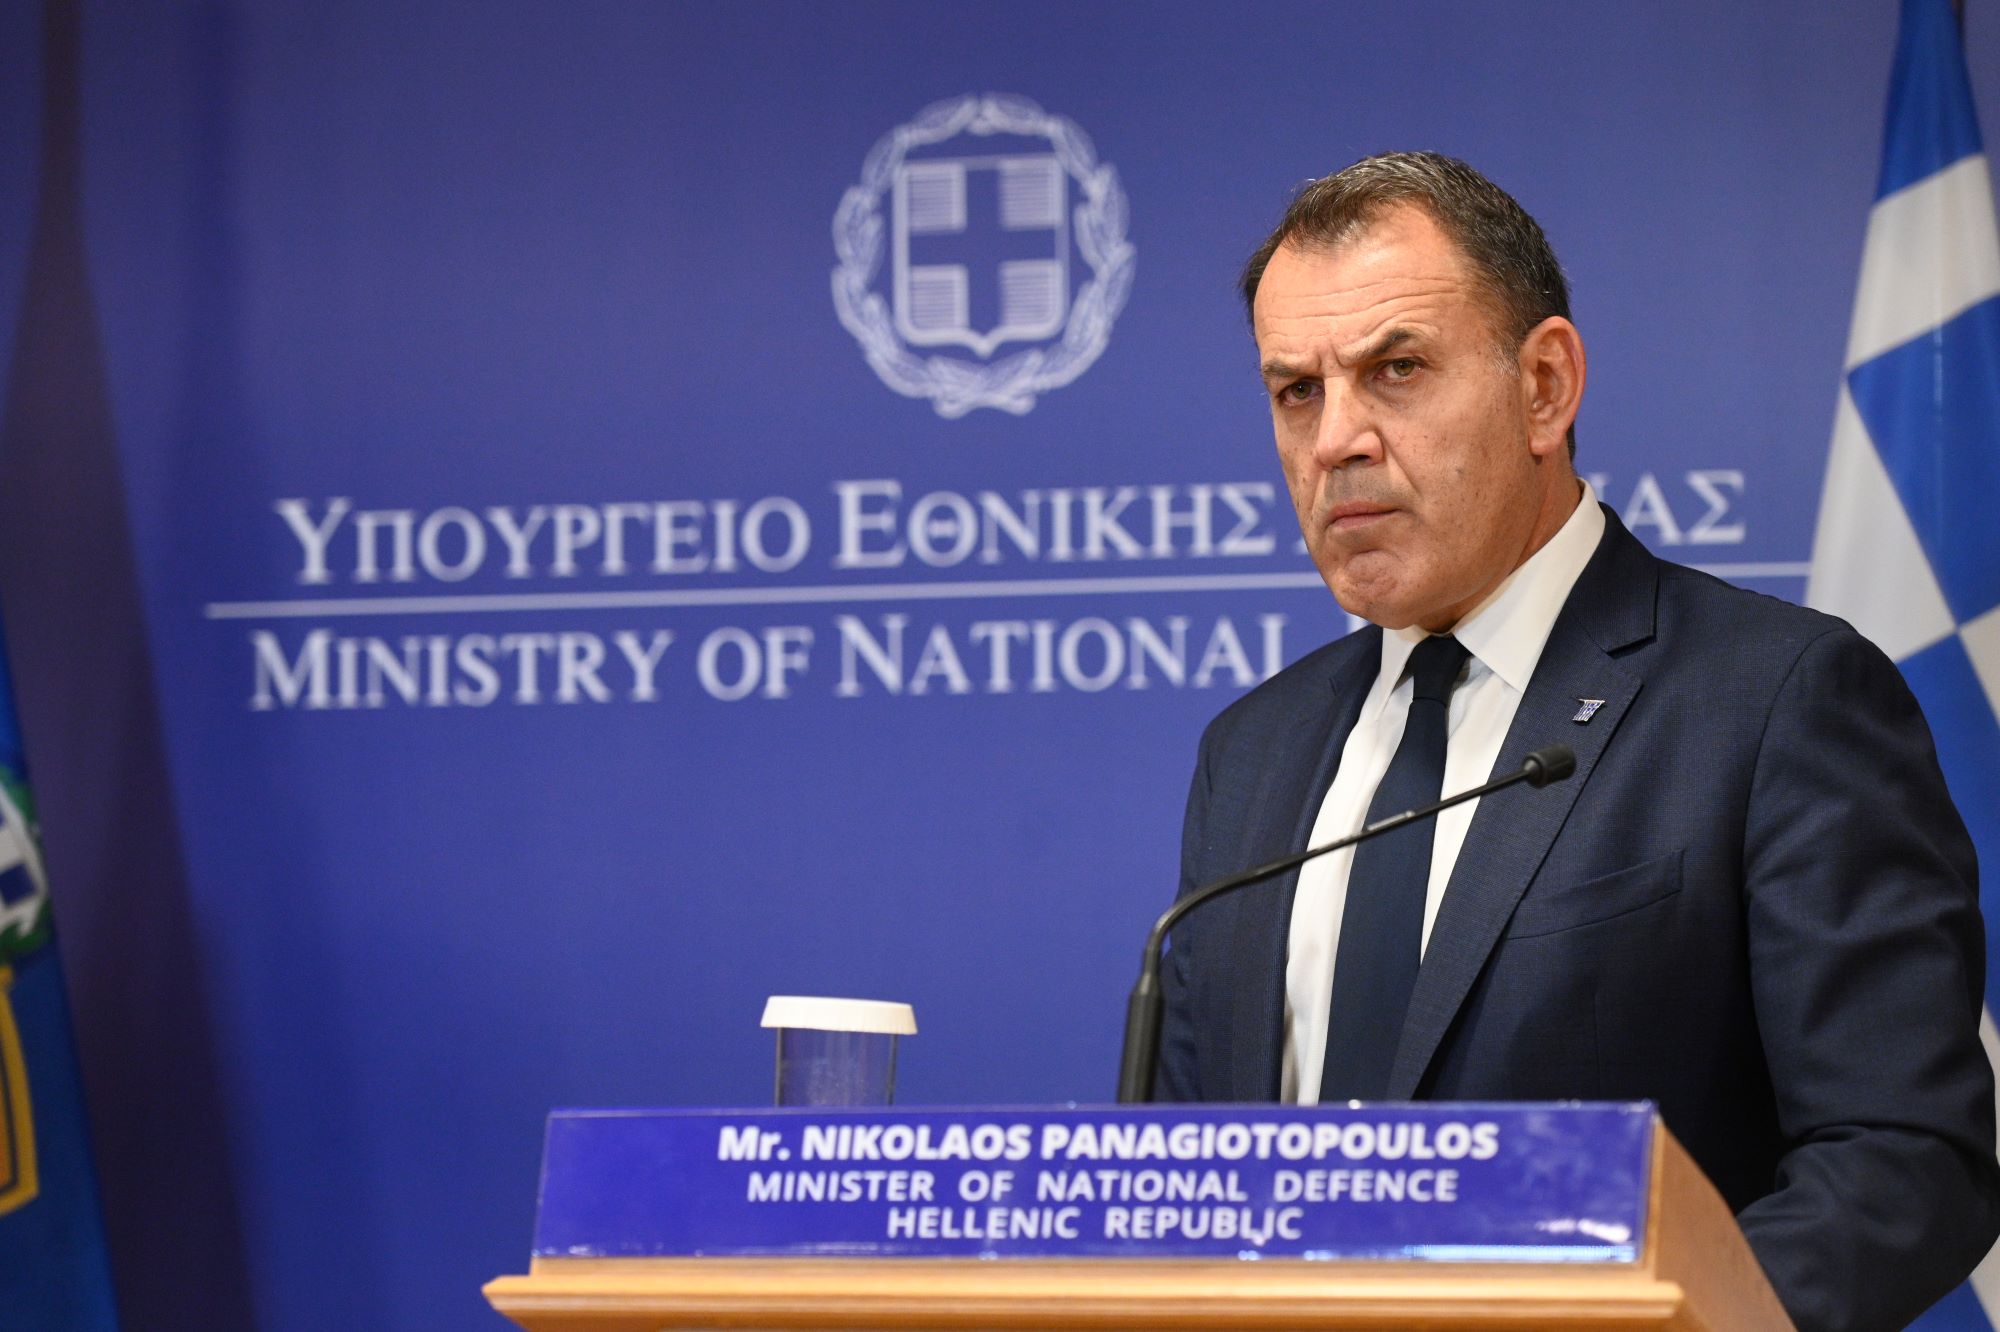 Επικεφαλής της προεκλογικής εκστρατείας της ΝΔ ο Νίκος Παναγιωτόπουλος και σενάριο επιστροφής του στο ΥΠΕΘΑ